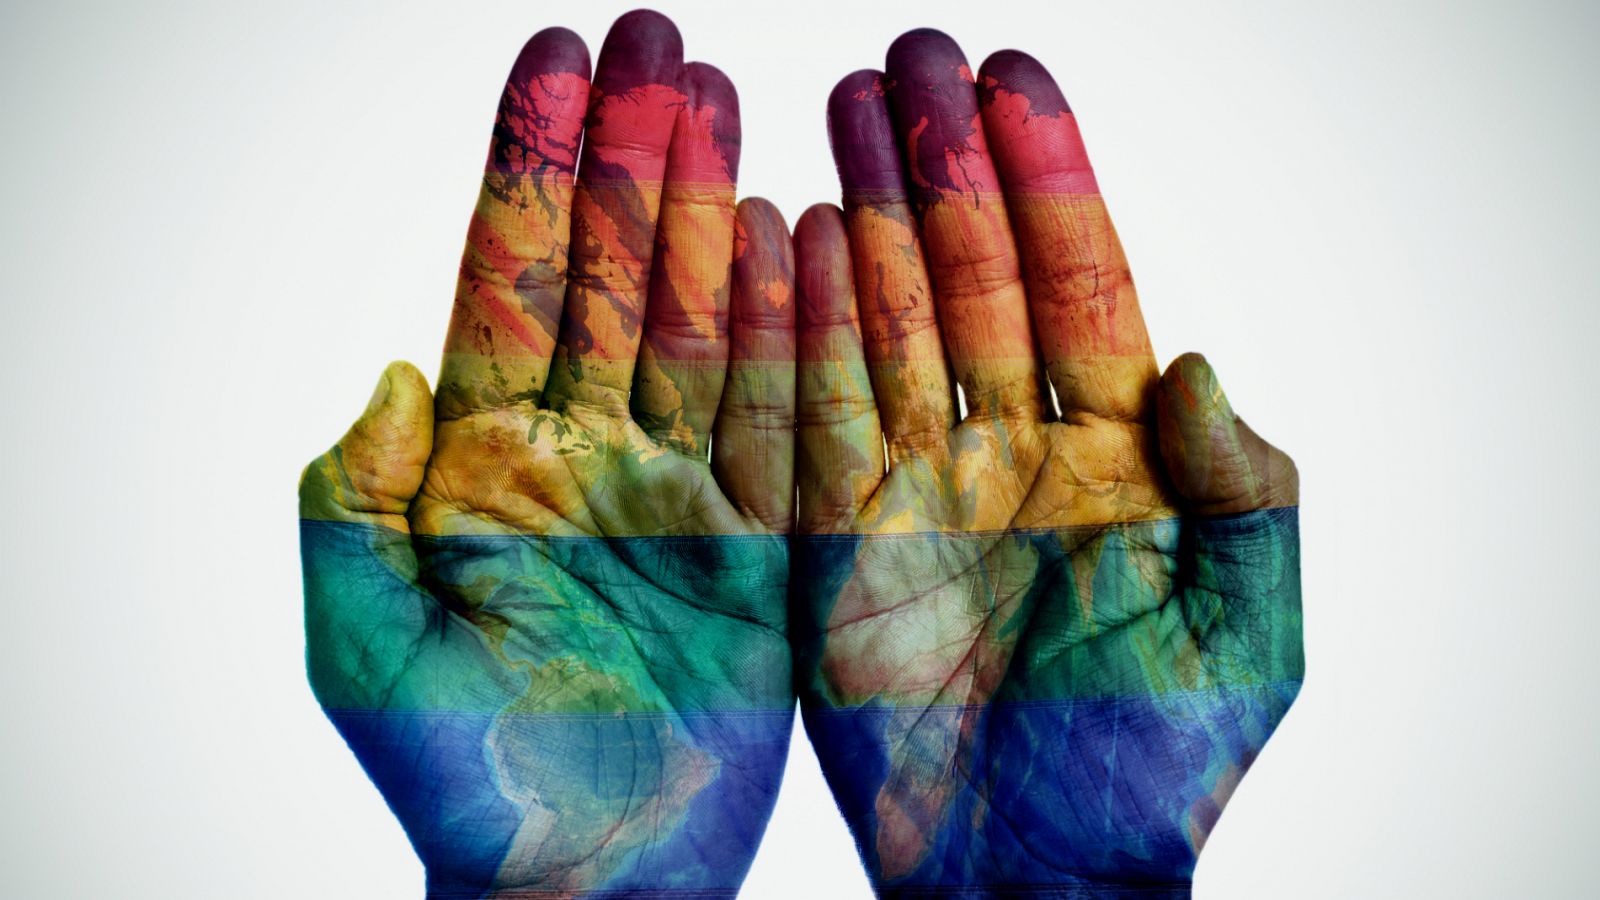 Homofobia | Los colectivos LGTBIQ denuncian un repunte de las agresiones por homofobia - RTVE.es